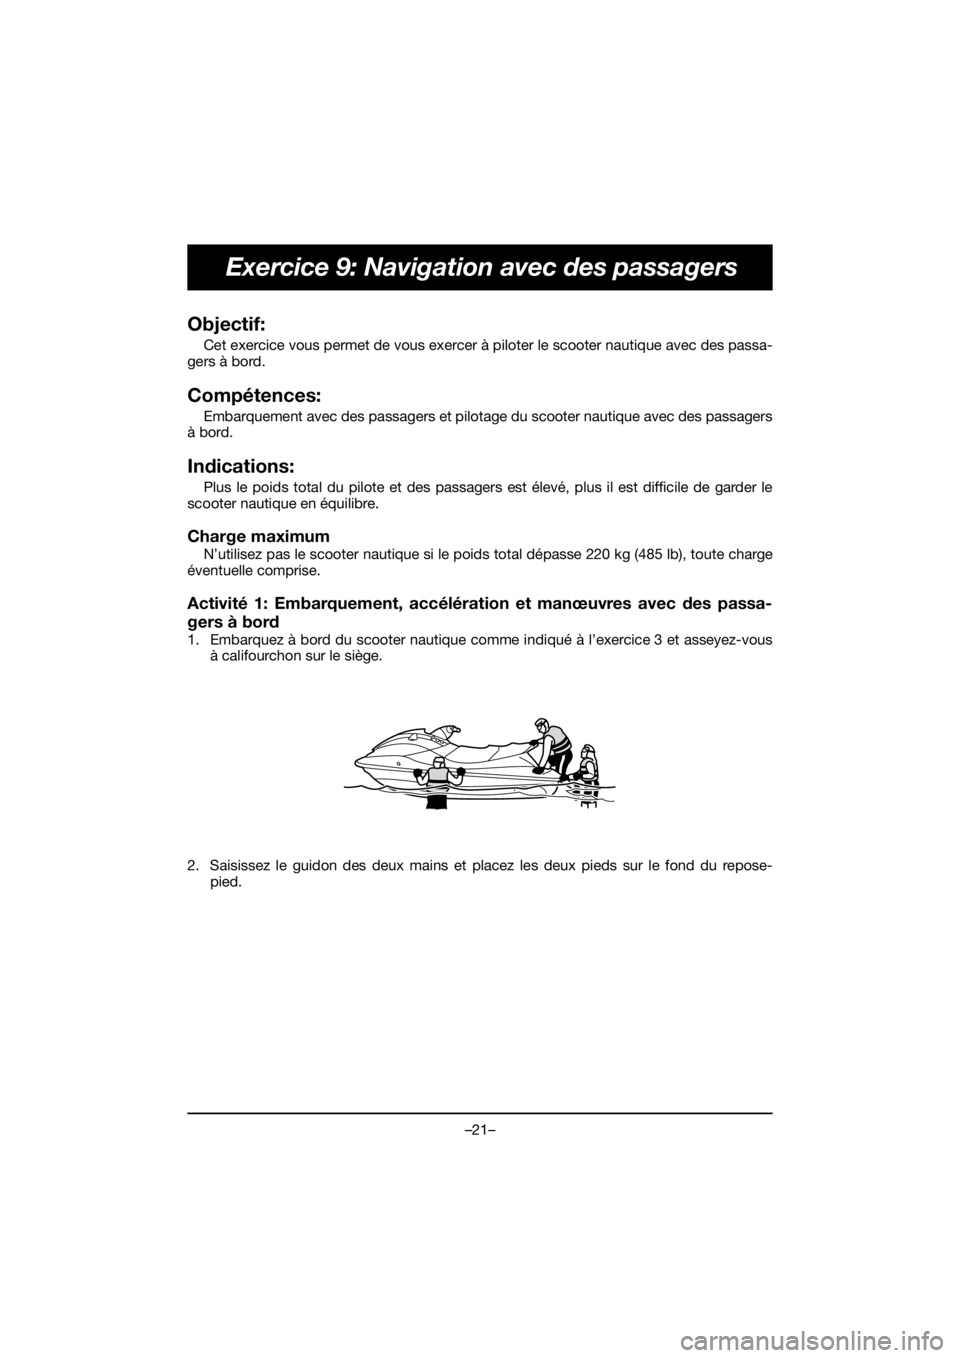 YAMAHA EX 2019  ΟΔΗΓΌΣ ΧΡΉΣΗΣ (in Greek) –21–
Exercice 9: Navigation avec des passagers
Objectif: 
Cet exercice vous permet de vous exercer à piloter le scooter nautique avec des passa-
gers à bord.
Compétences: 
Embarquement avec des